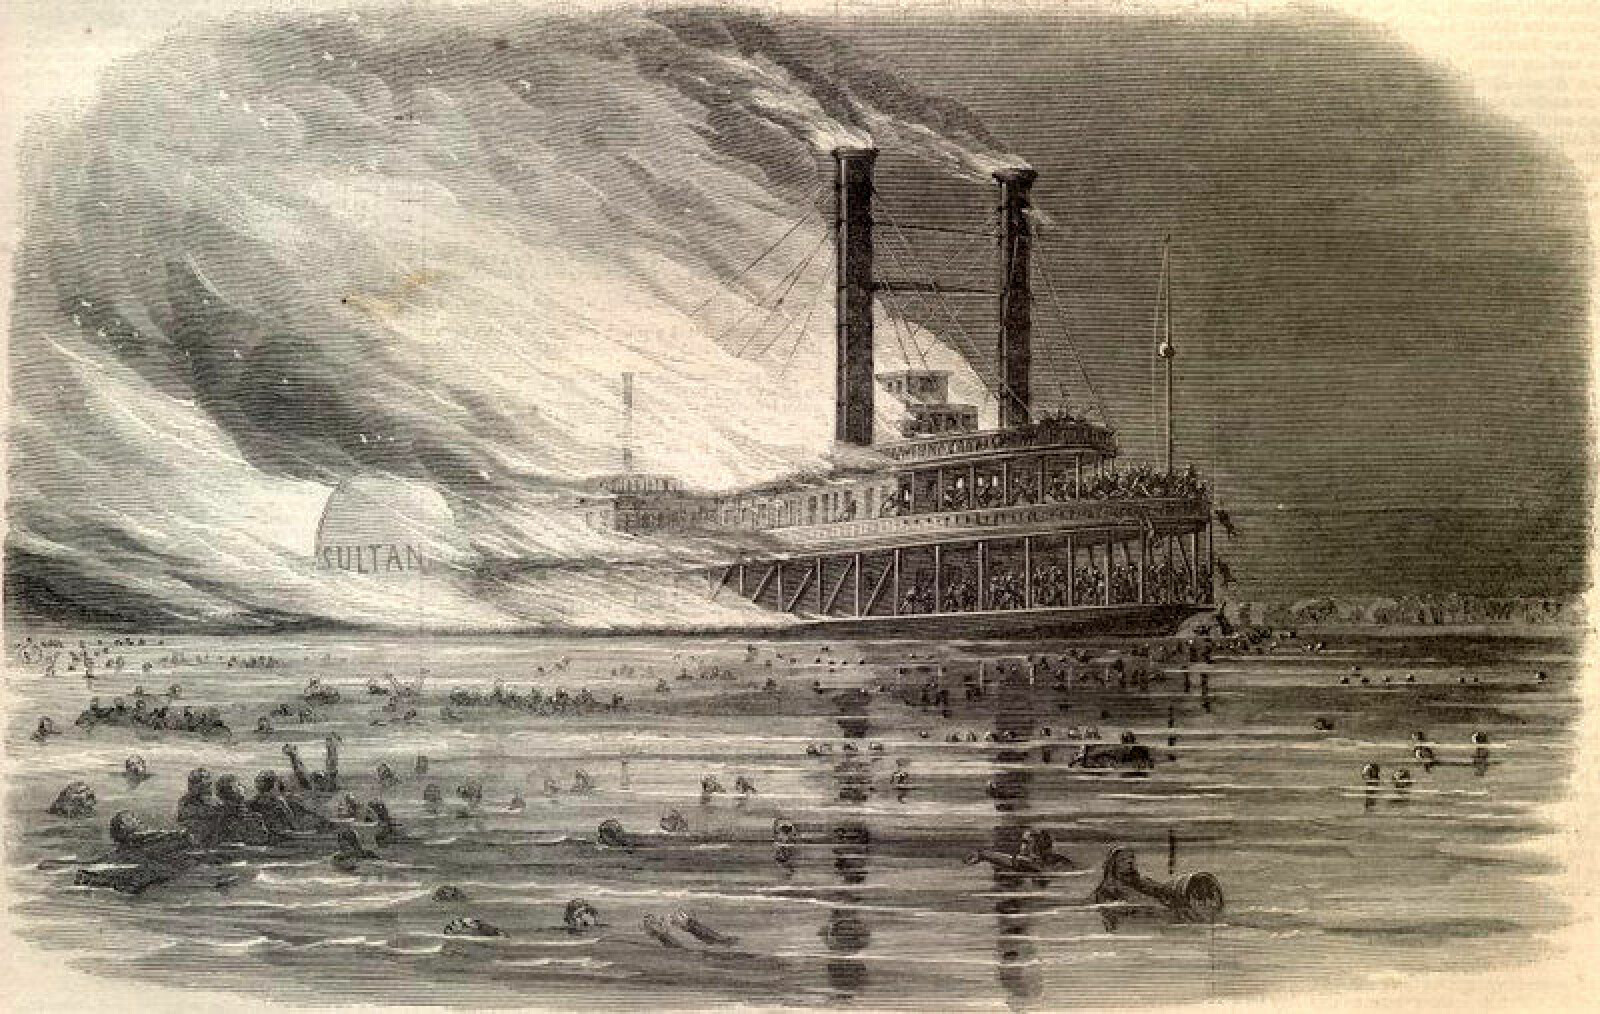 <b>EKSPLODERTE:</b> En lekkasje i en dampkjele var trolig årsak til eksplosjonen om bord på Sultana, her tegnet av ukjent opphavsmann.